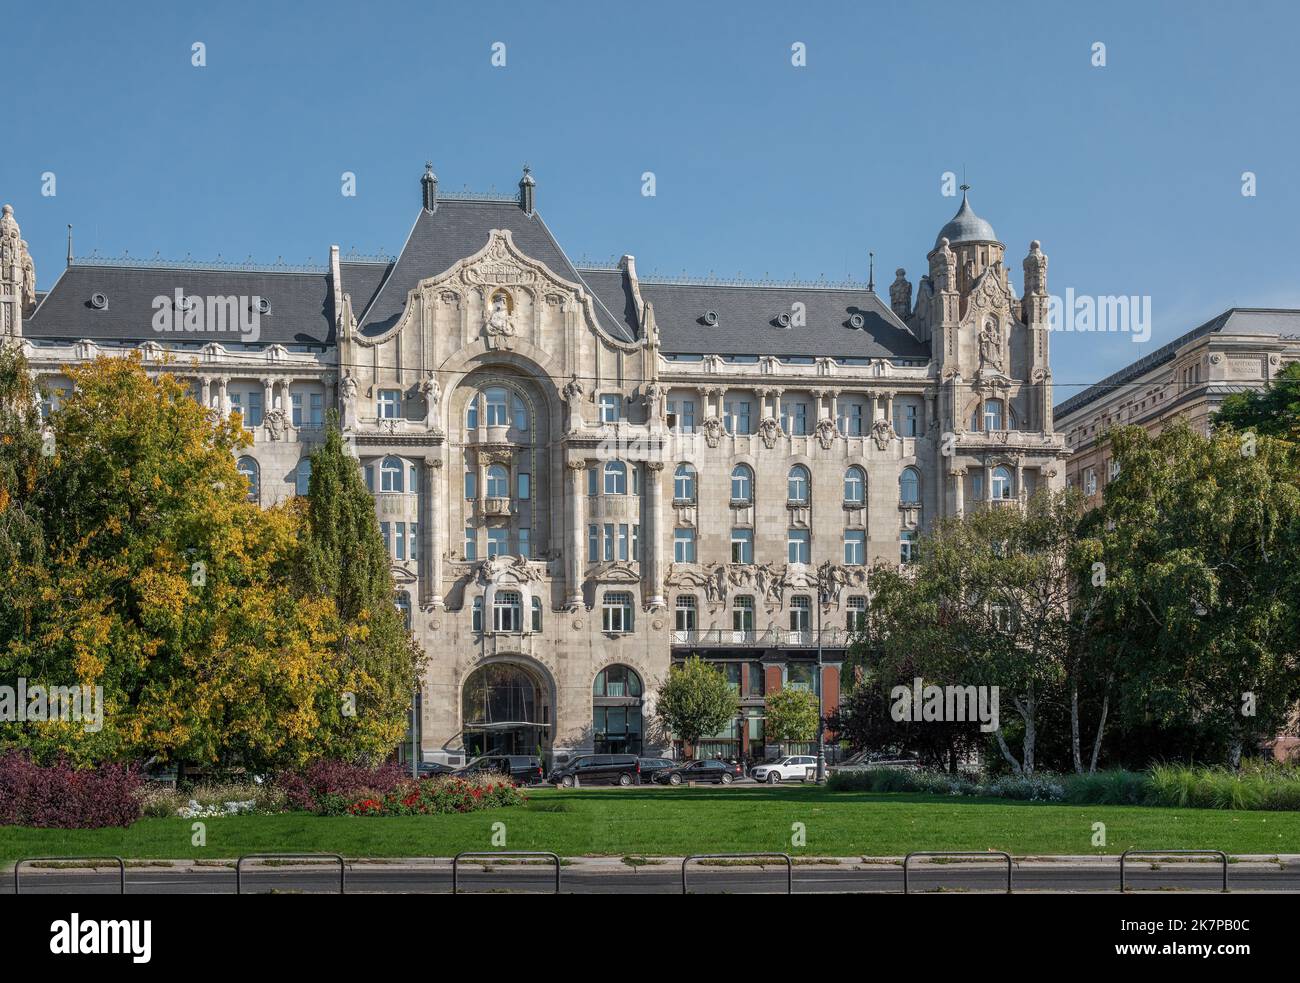 Gresham Palace - Budapest, Hungary Stock Photo